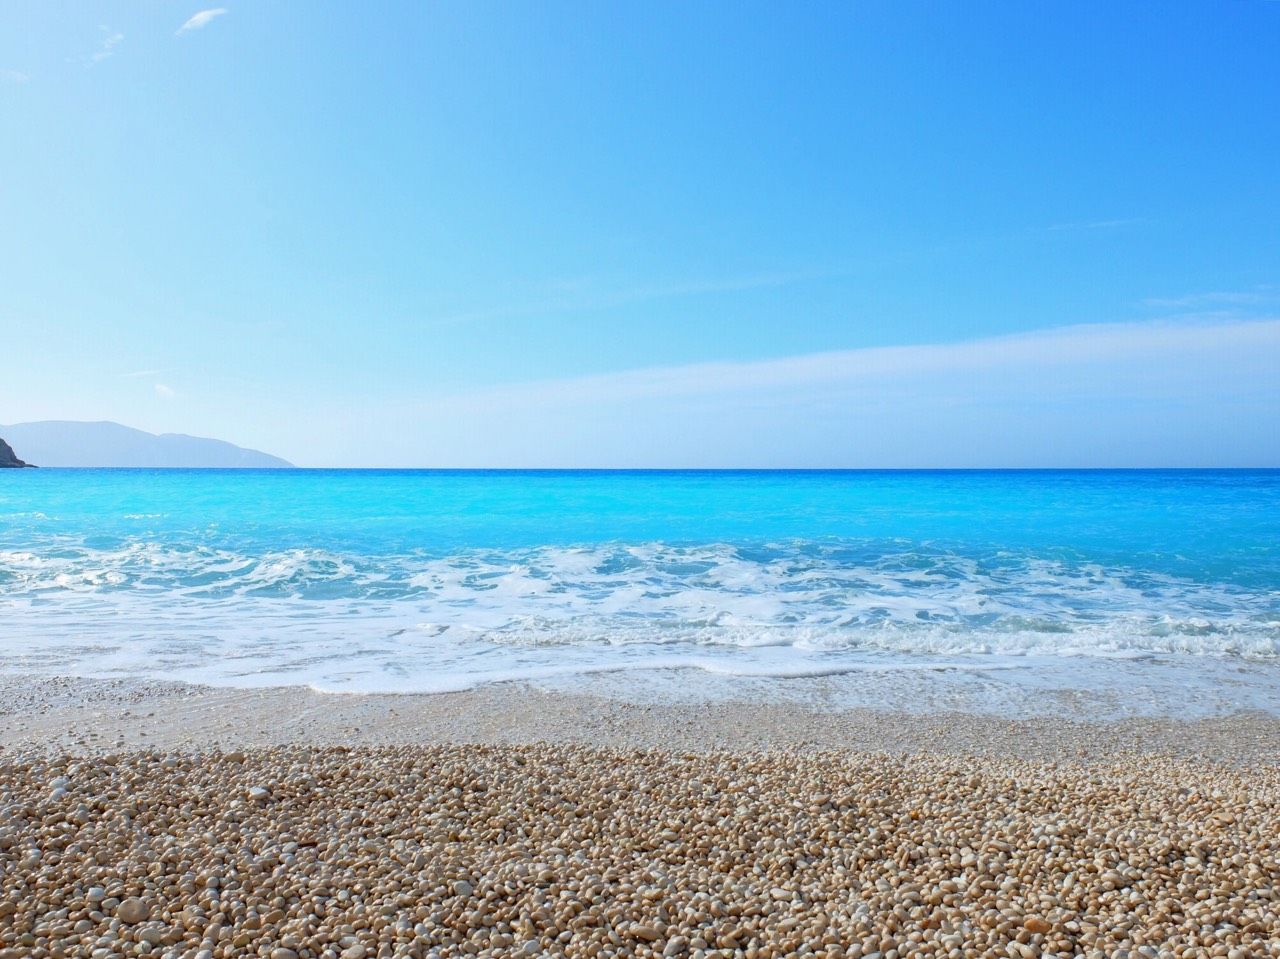 驚愕の青色 ギリシャの海なら迷わずイオニア海 ケファロニア島へ ギリシャ Lineトラベルjp 旅行ガイド